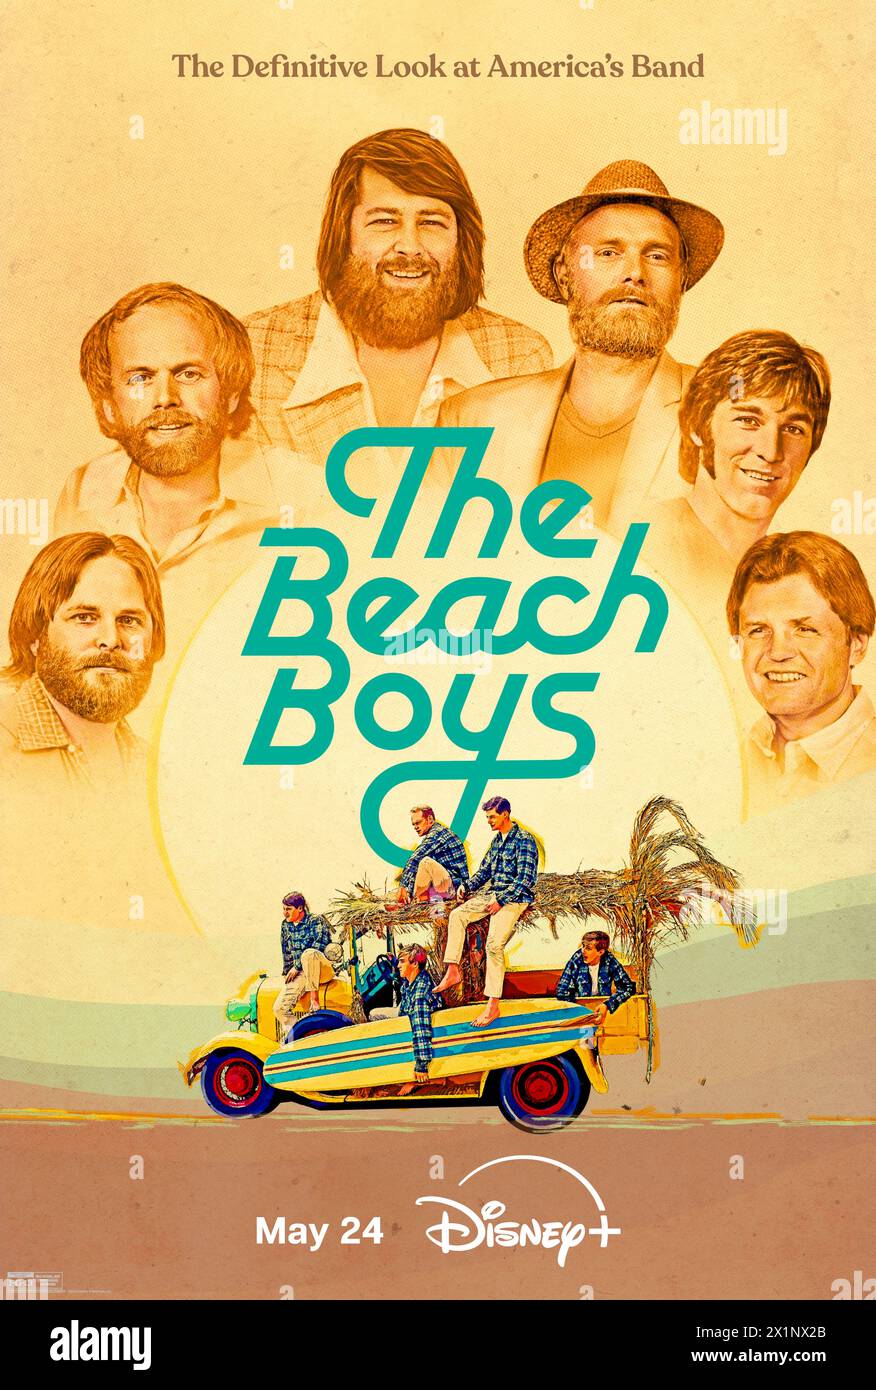 The Beach Boys (2024) unter der Regie von Frank Marshall und Thom Zimny, ein Dokumentarfilm, der die legendäre Band feiert, die die Popmusik revolutionierte und den harmonischen Sound kreierte, der den California Dream verkörperte. Werbeplakat.***NUR REDAKTIONELLE VERWENDUNG*** Guthaben: BFA / Disney+ Stockfoto